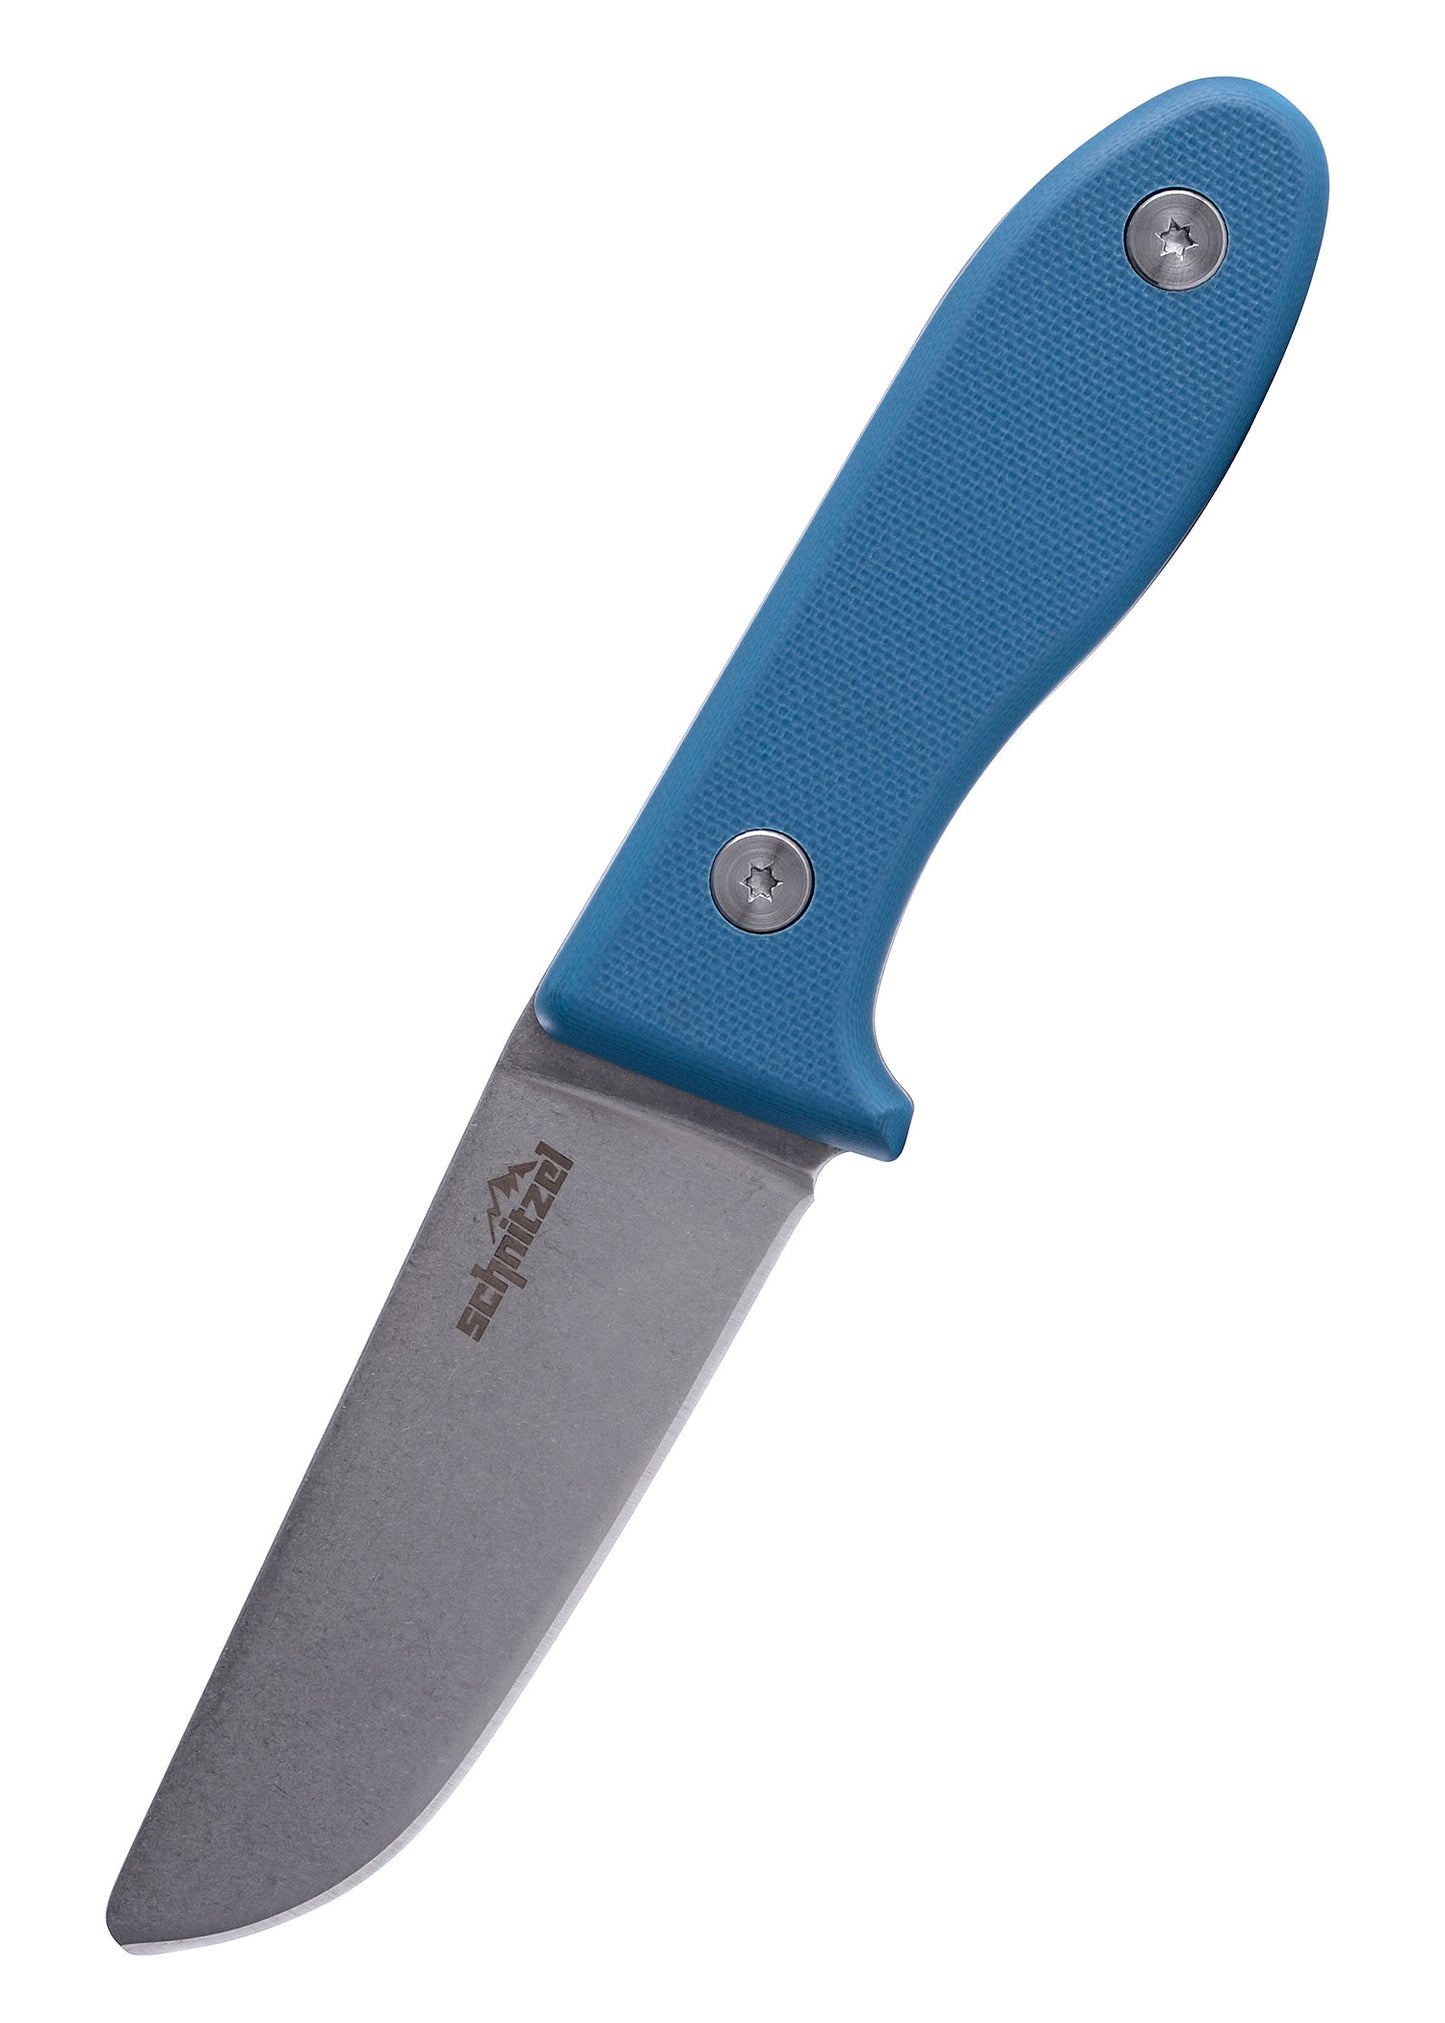 Das UNU Kinder Schnitzmesser der Firma Schnitzel mit blauem Griff von der Seite